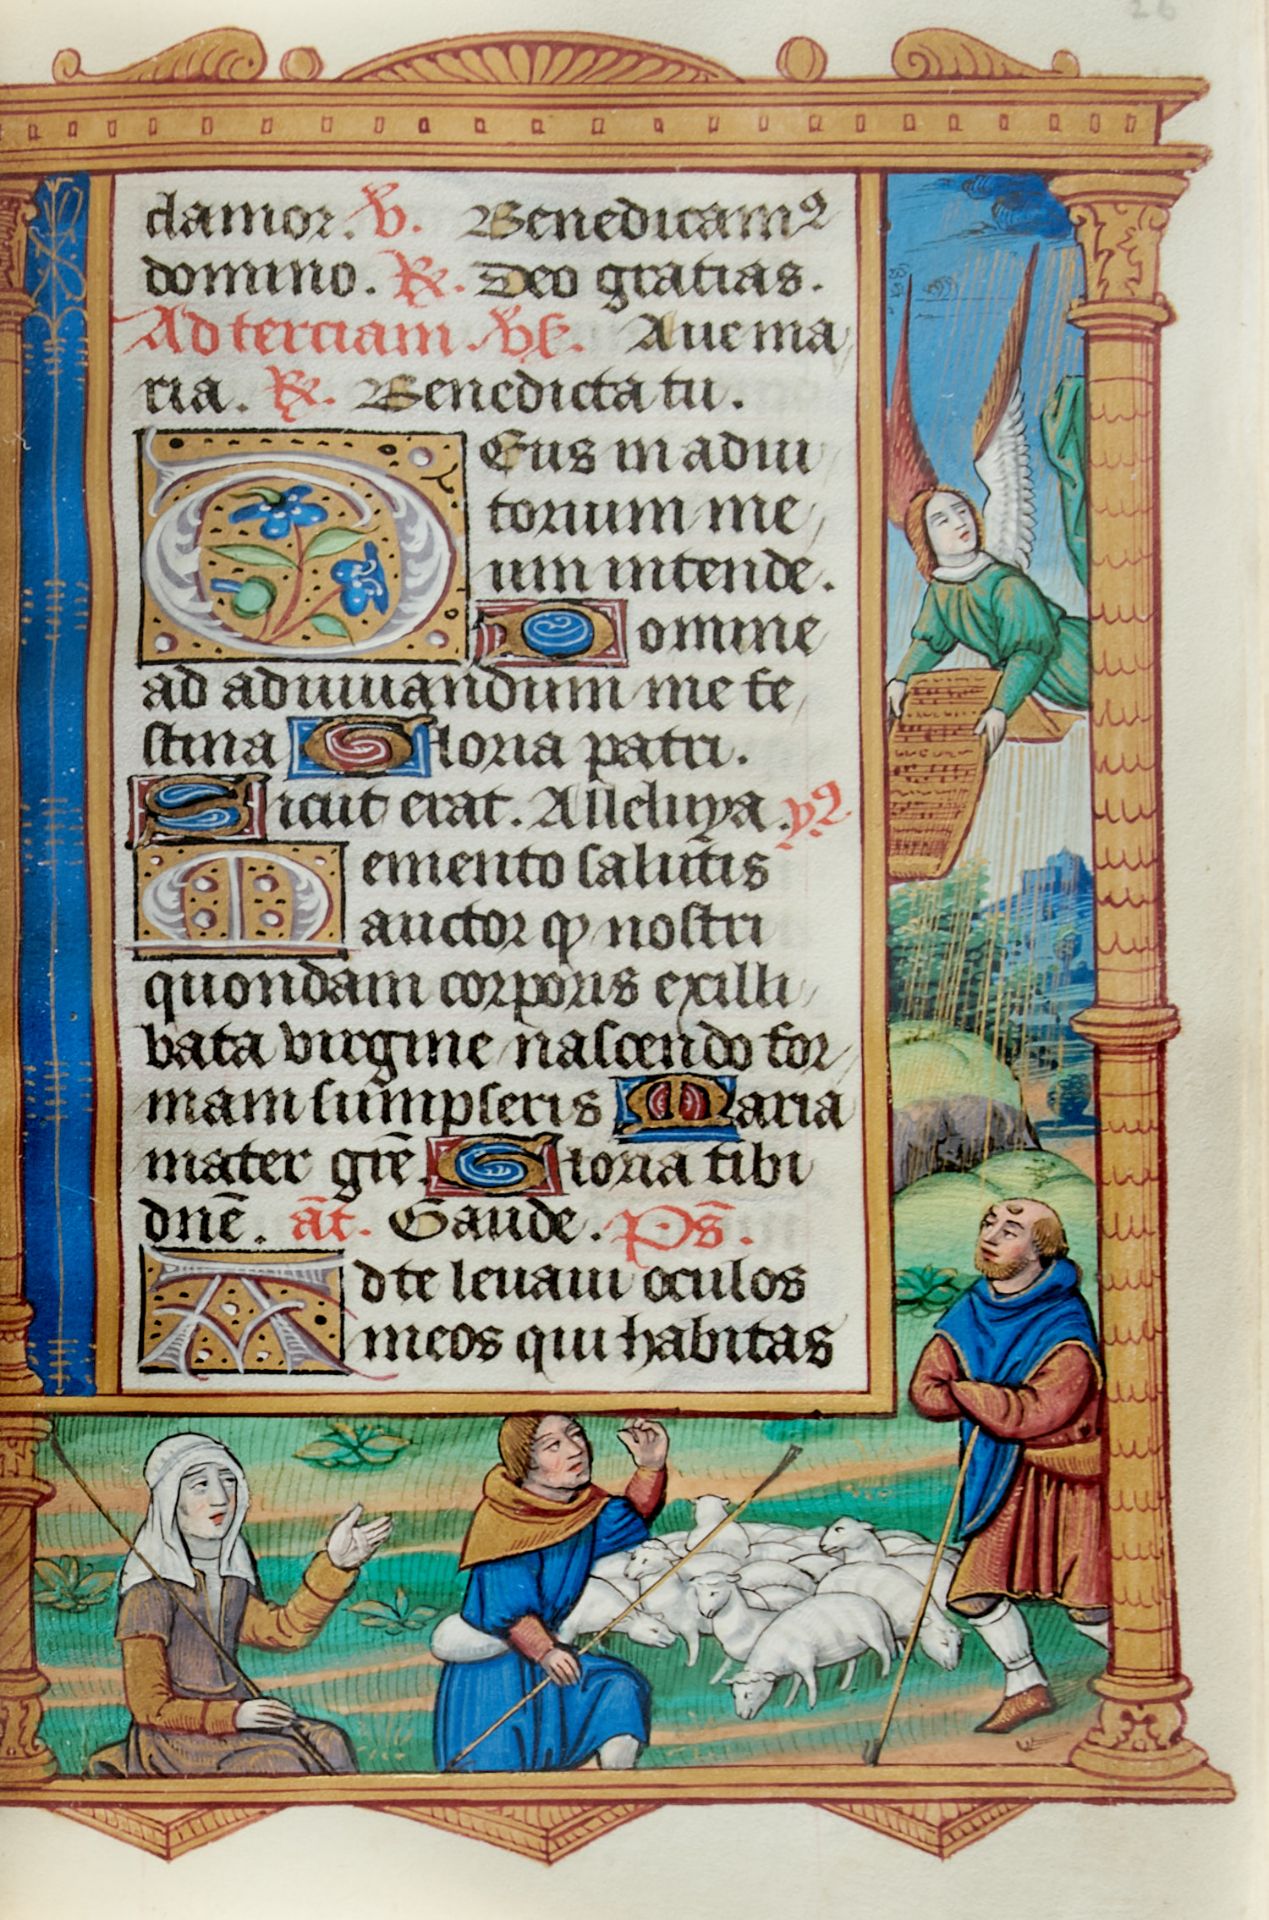 Pariser Stundenbuch. Lateinische Handschrift auf Pergament. Paris, um 1500. Ca. 14 x 10 cm. - Bild 10 aus 26